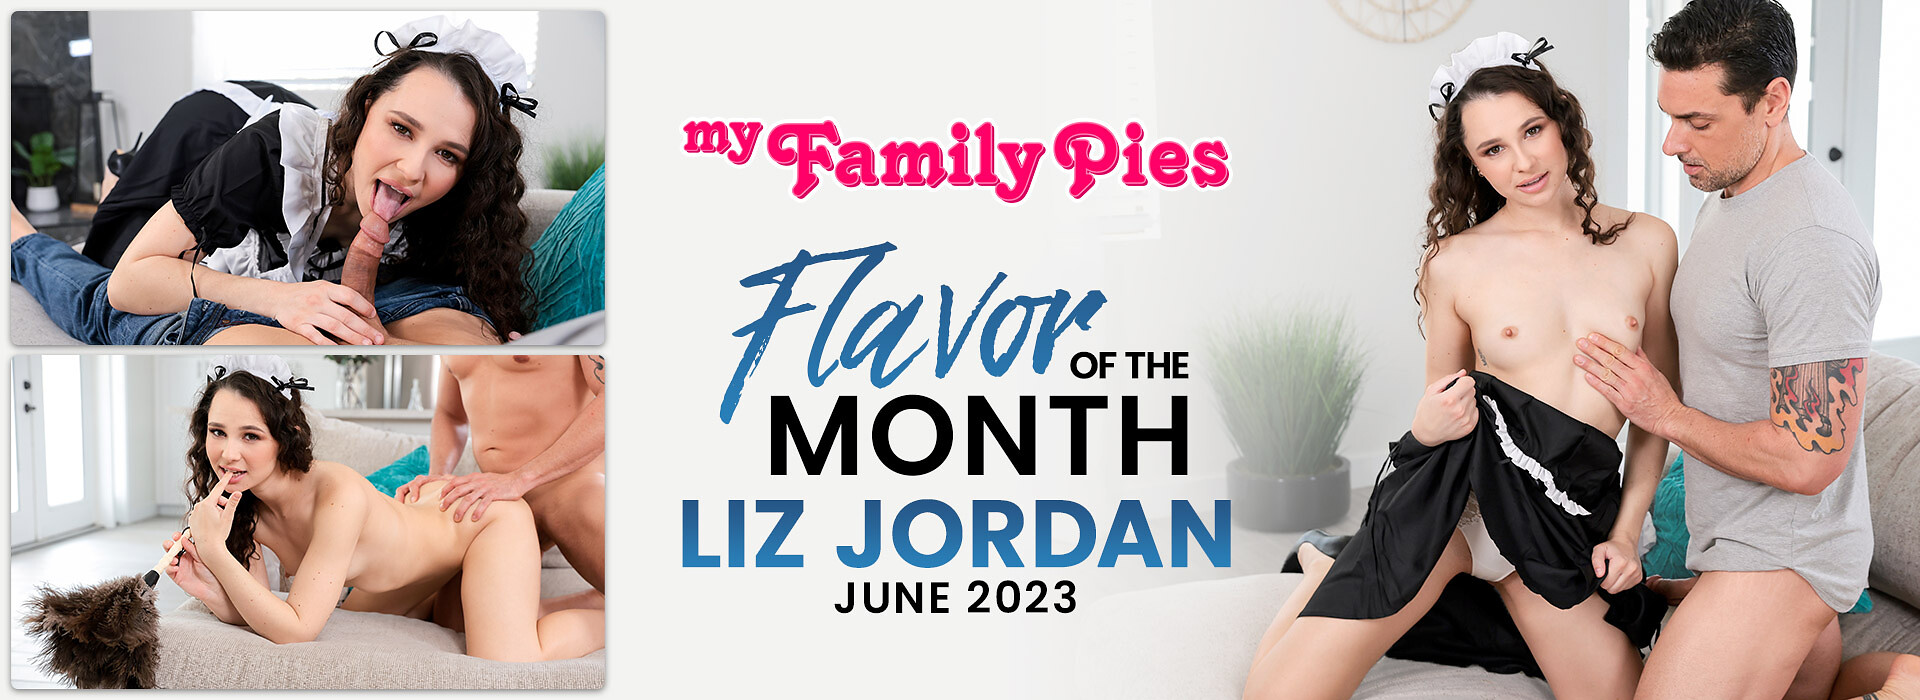 June 2023 Flavor Of The Month Liz Jordan